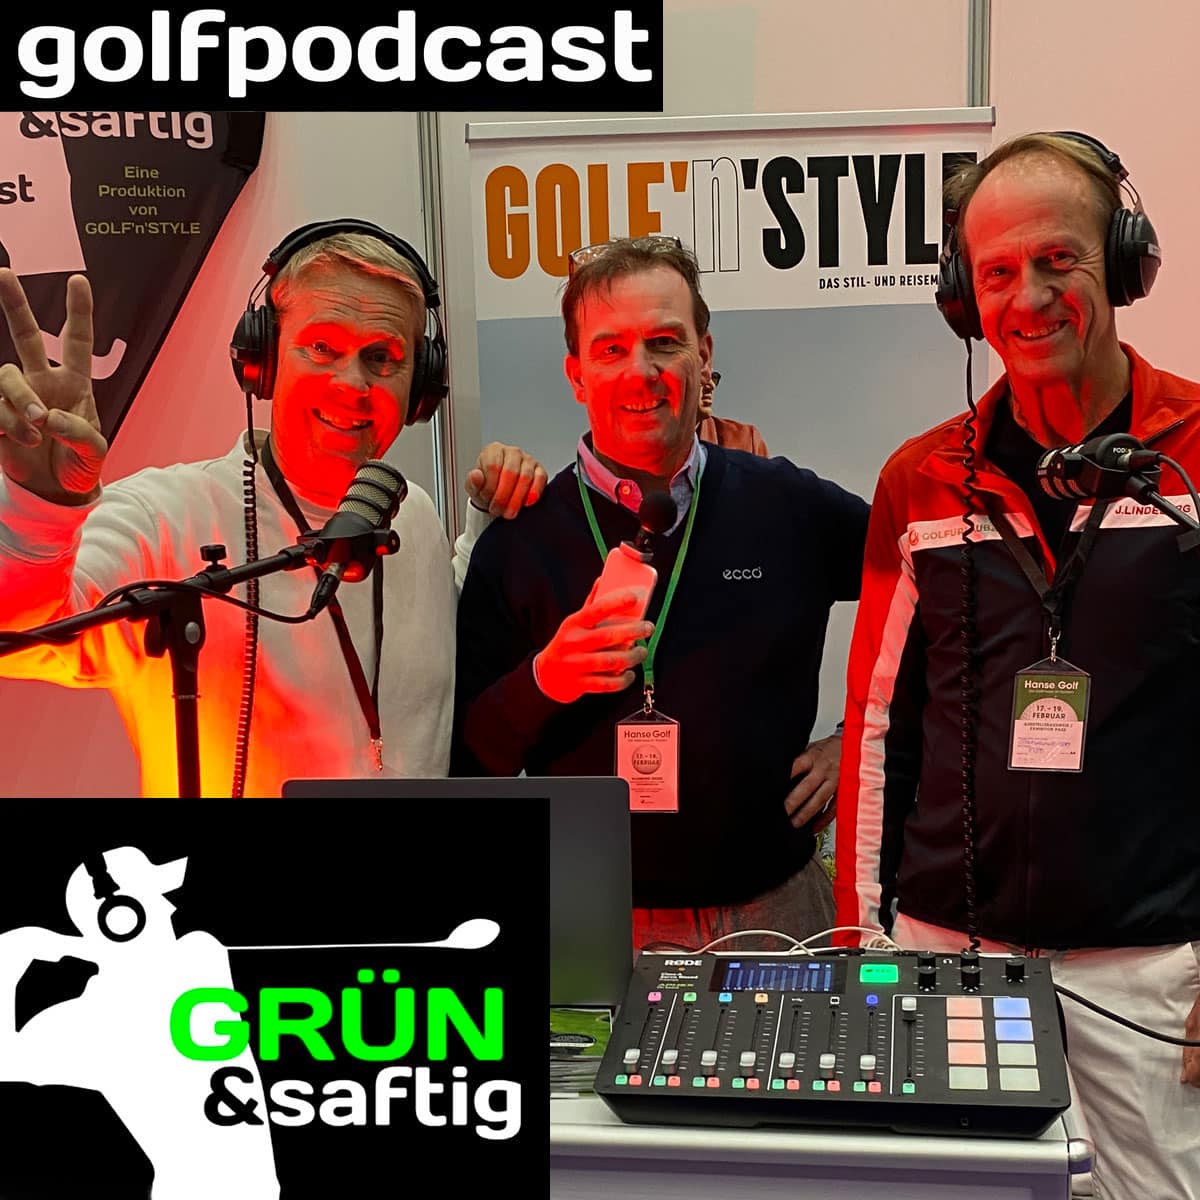 Podcast Grün & saftig auf der Hanse Golf